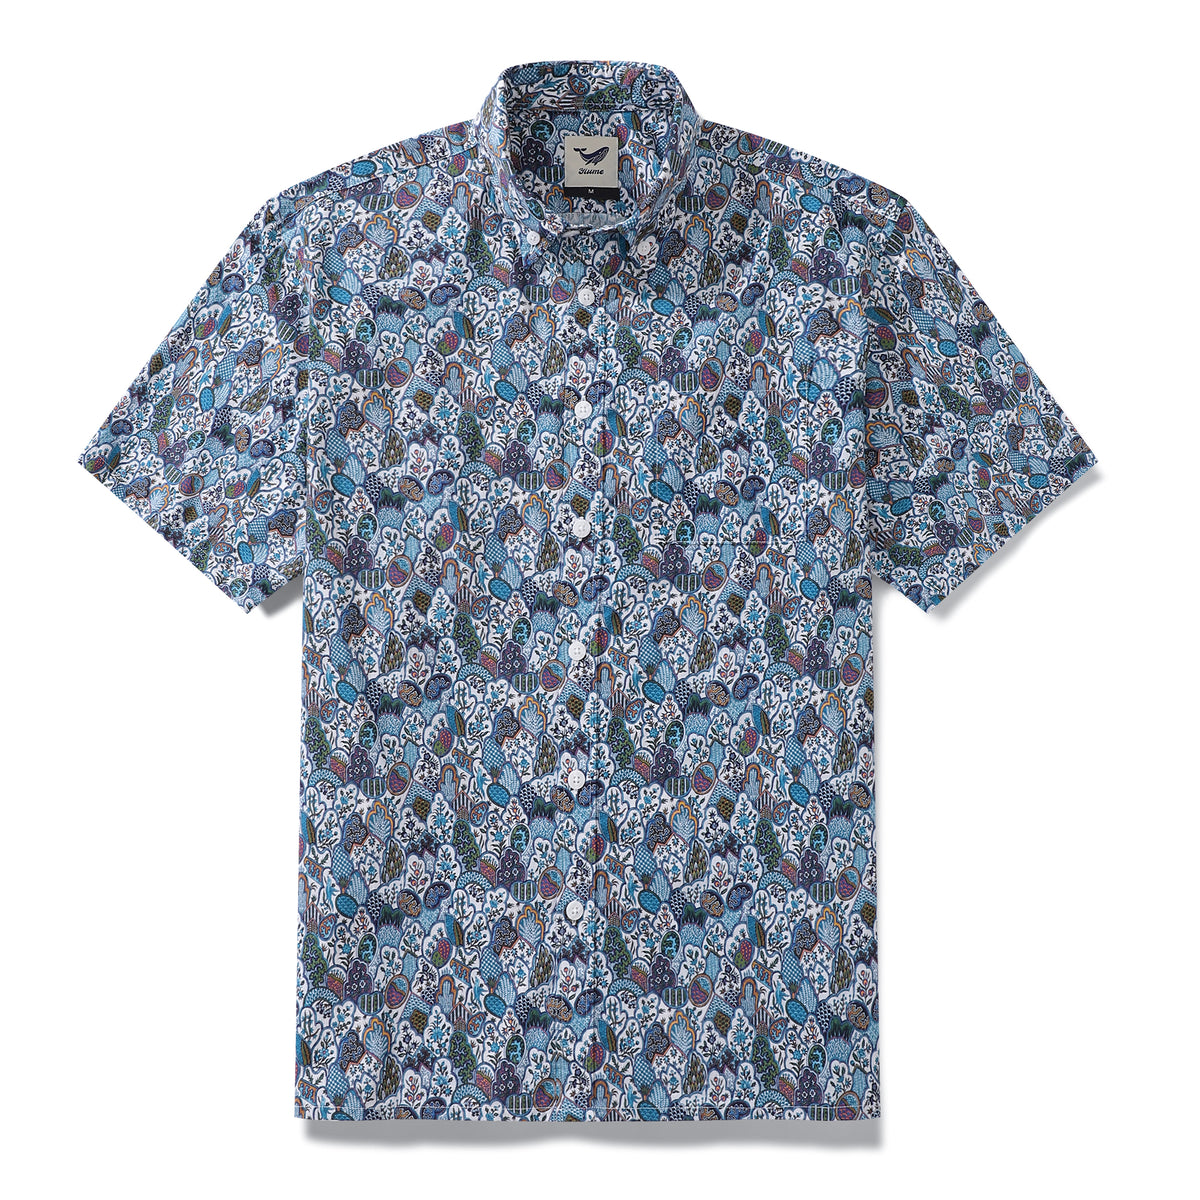 Men's Hawaiian Shirt Vintage Floral Print Cotton Button-down Short Sle ...